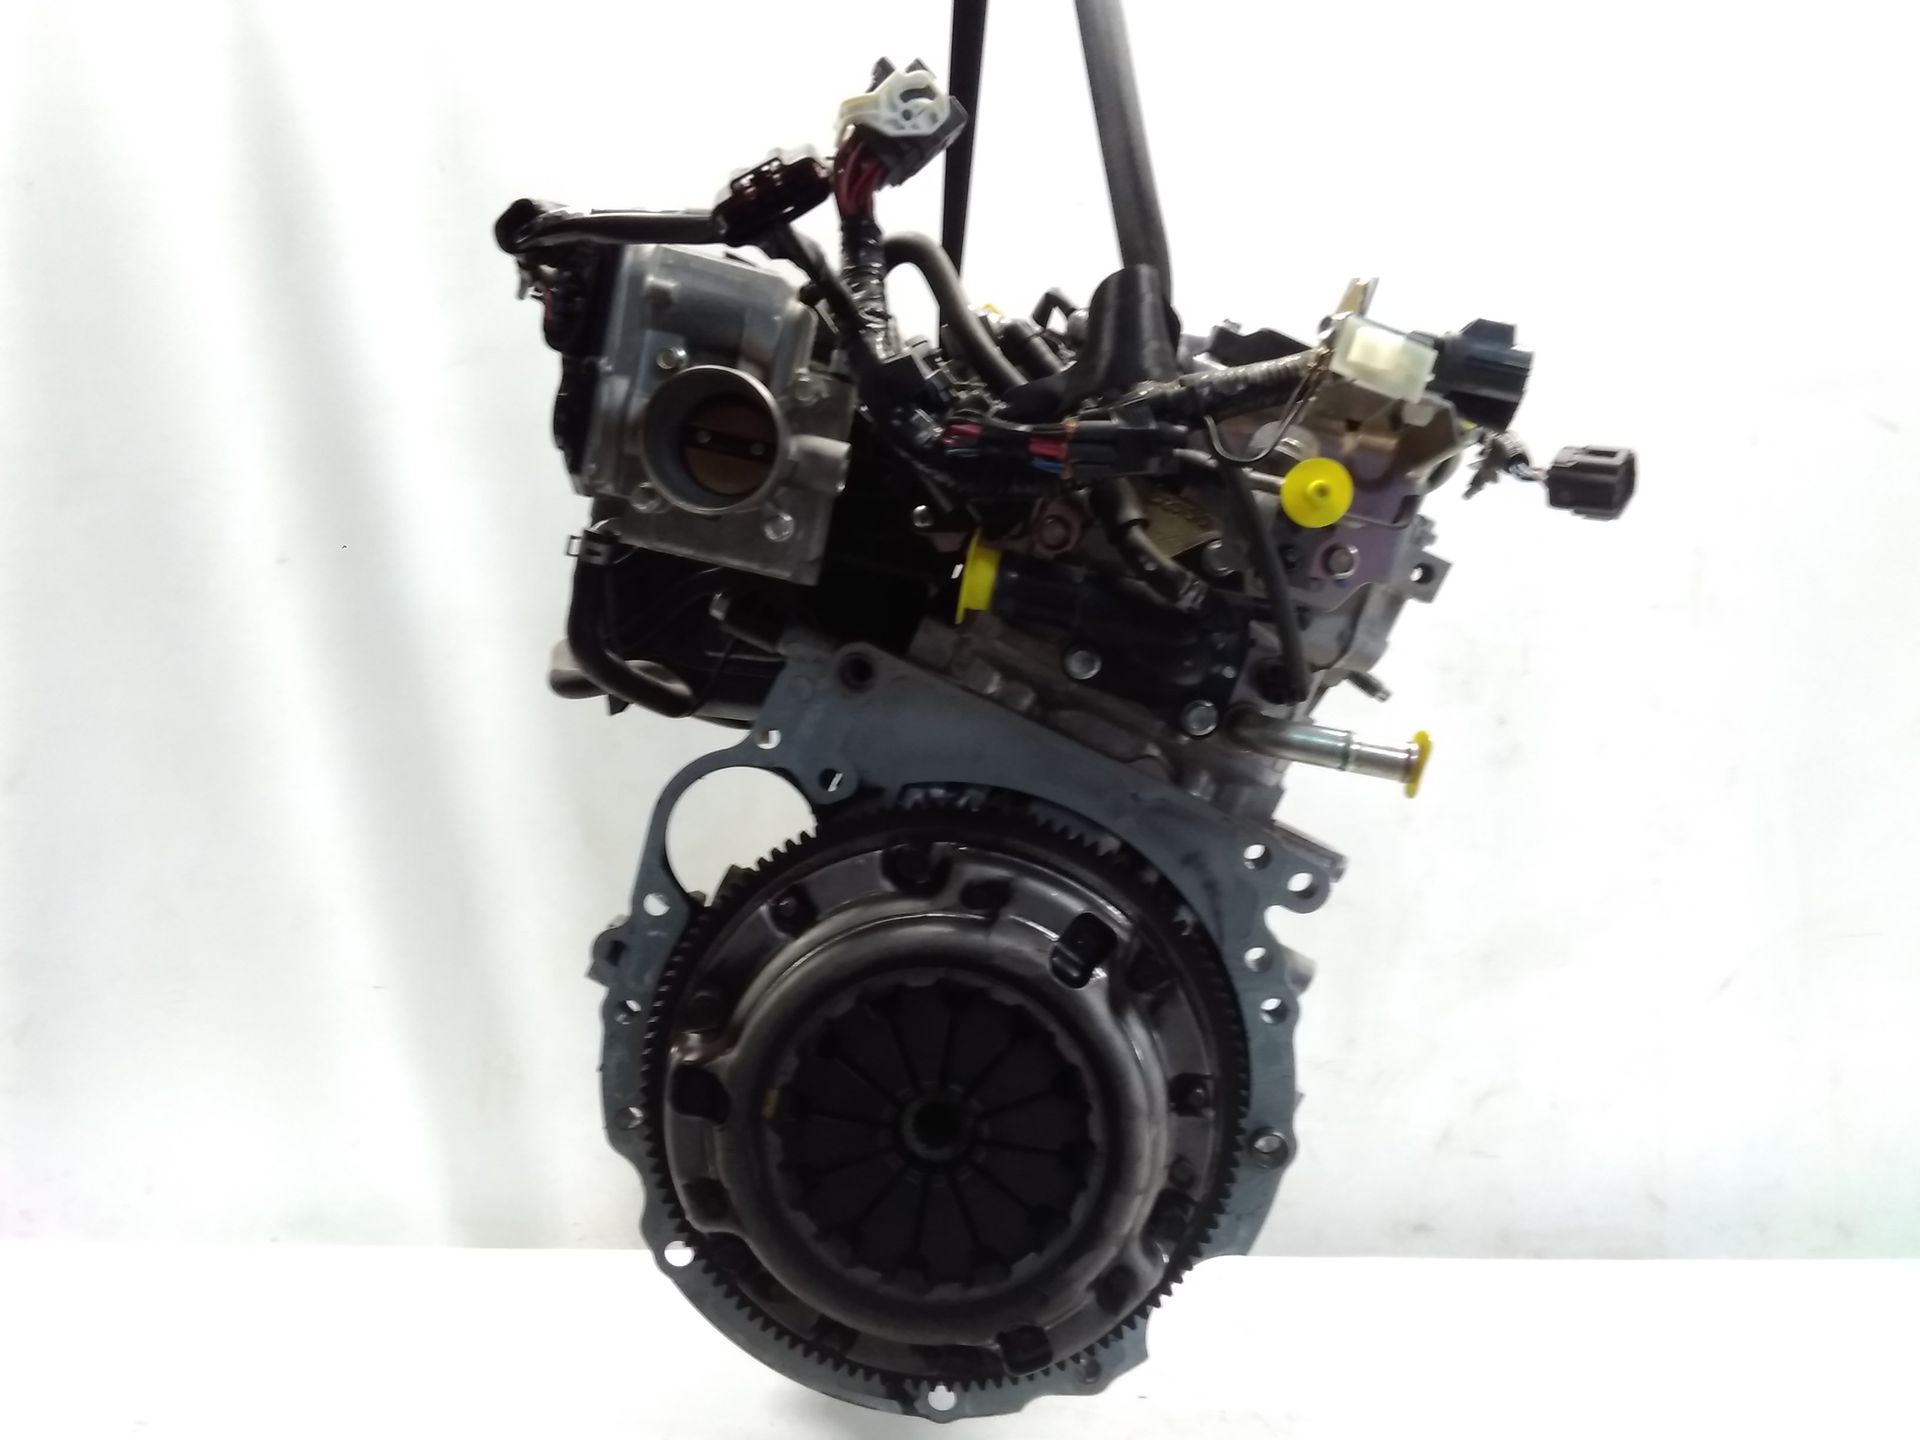 Mazda 2 DE Motor ZJ 1,3 55KW 25030km funktionsgeprüft